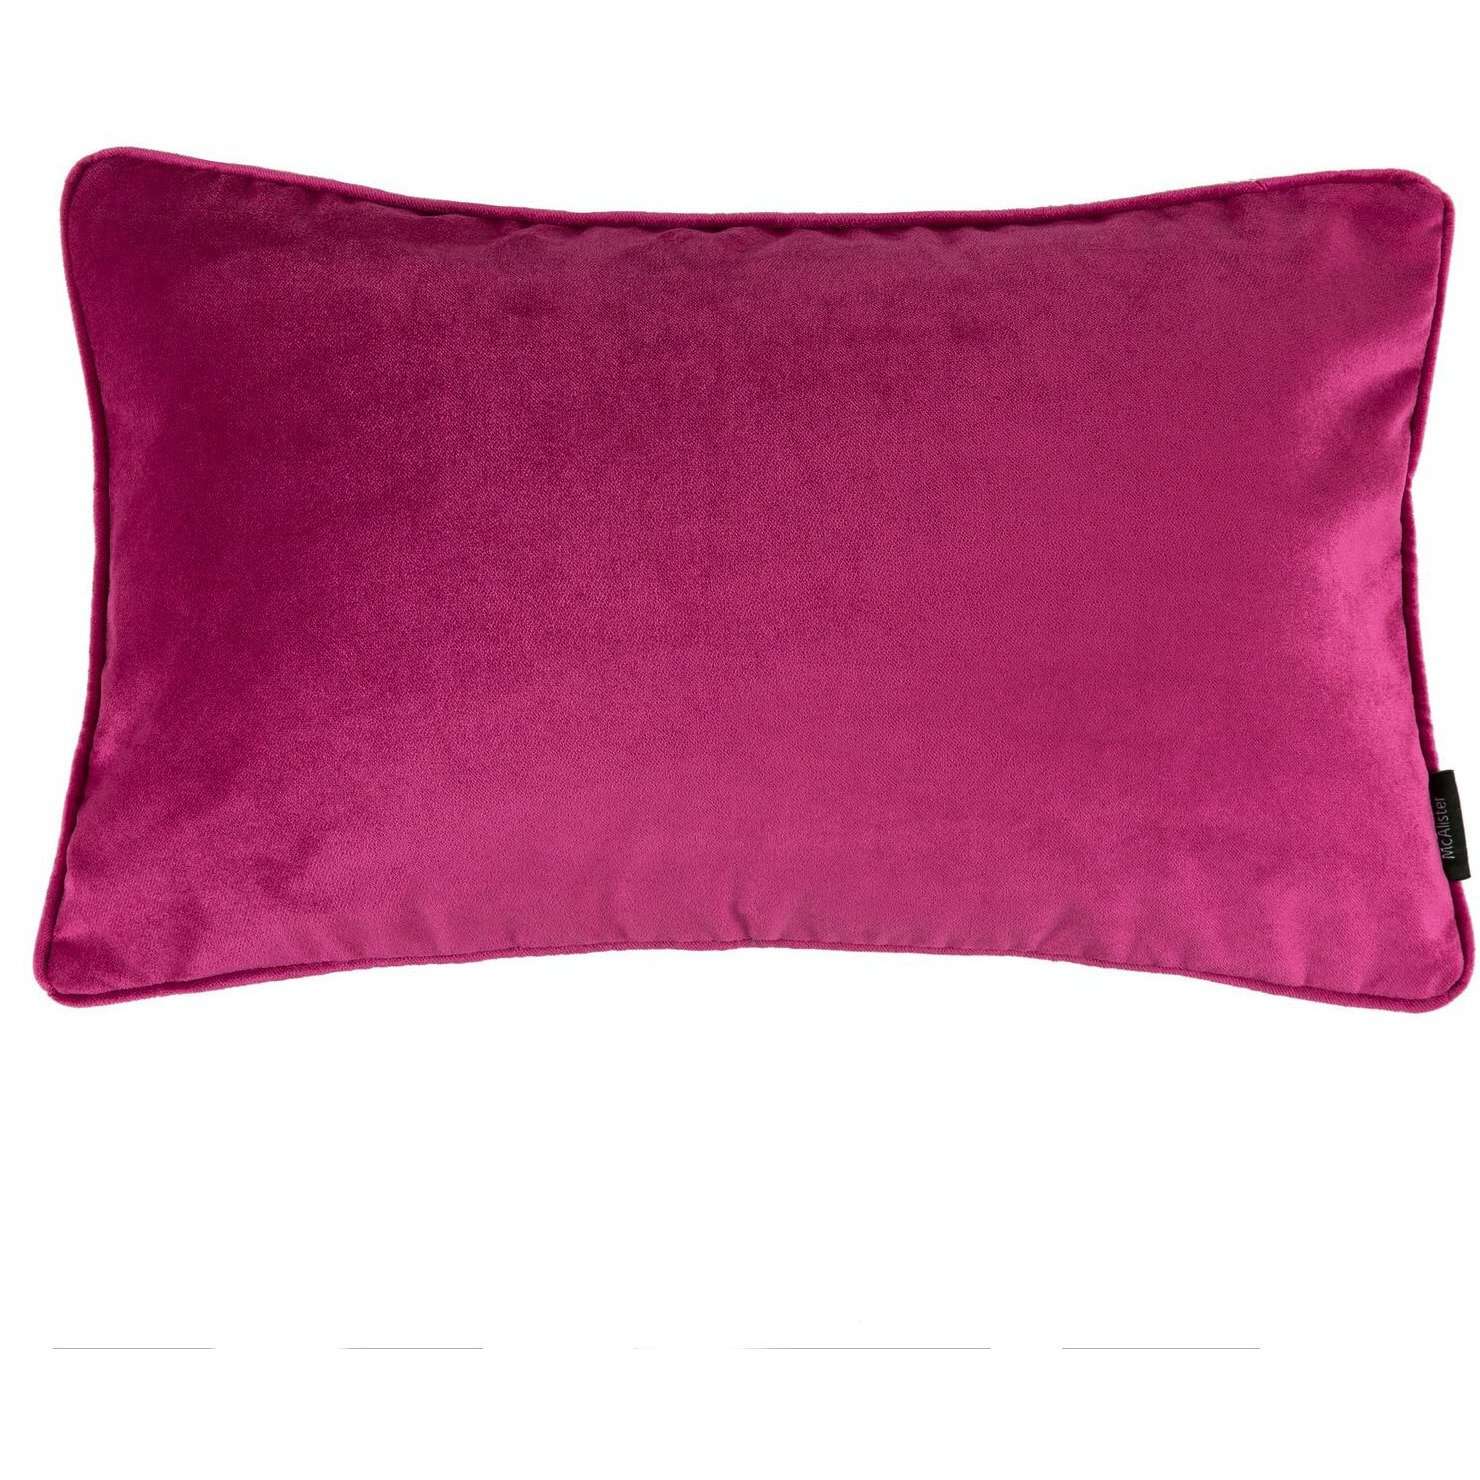 McAlister Textiles Matt Fuchsia Pink Velvet Pillow Pillow Cover Only 50cm x 30cm 